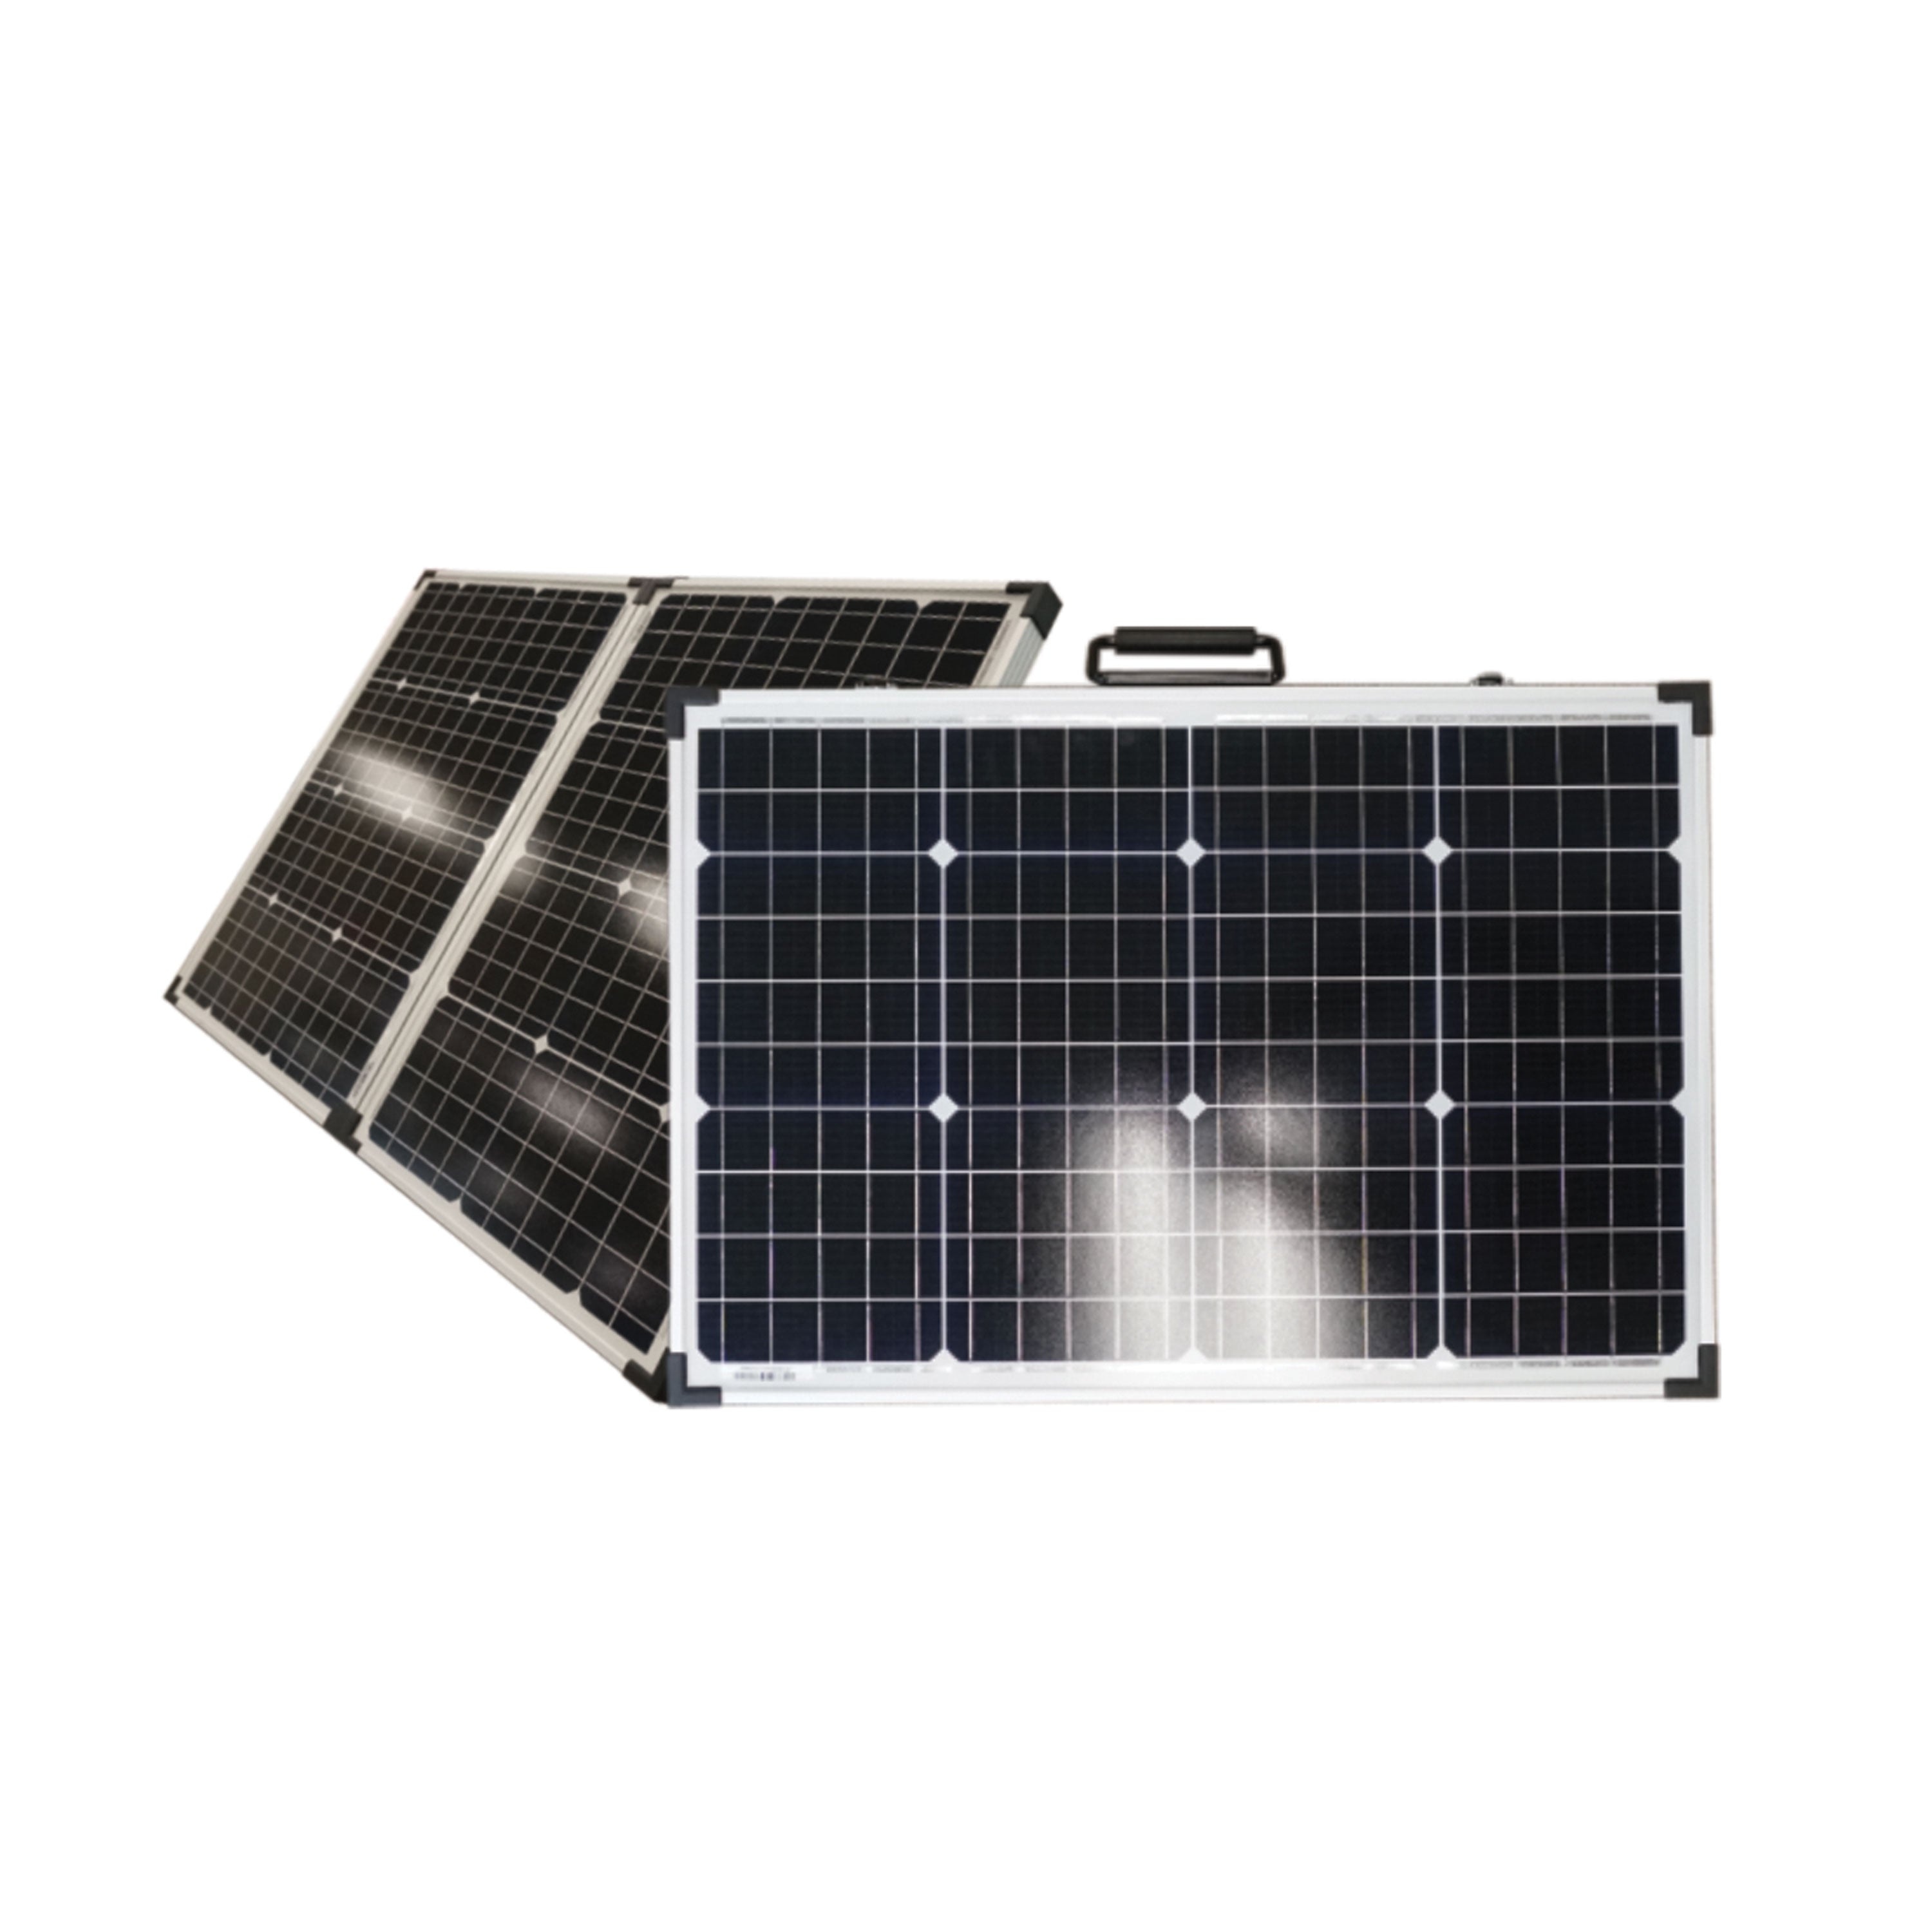 Xantrex 782-0100-01 Portable Solar Charging Kit - 100 Watt